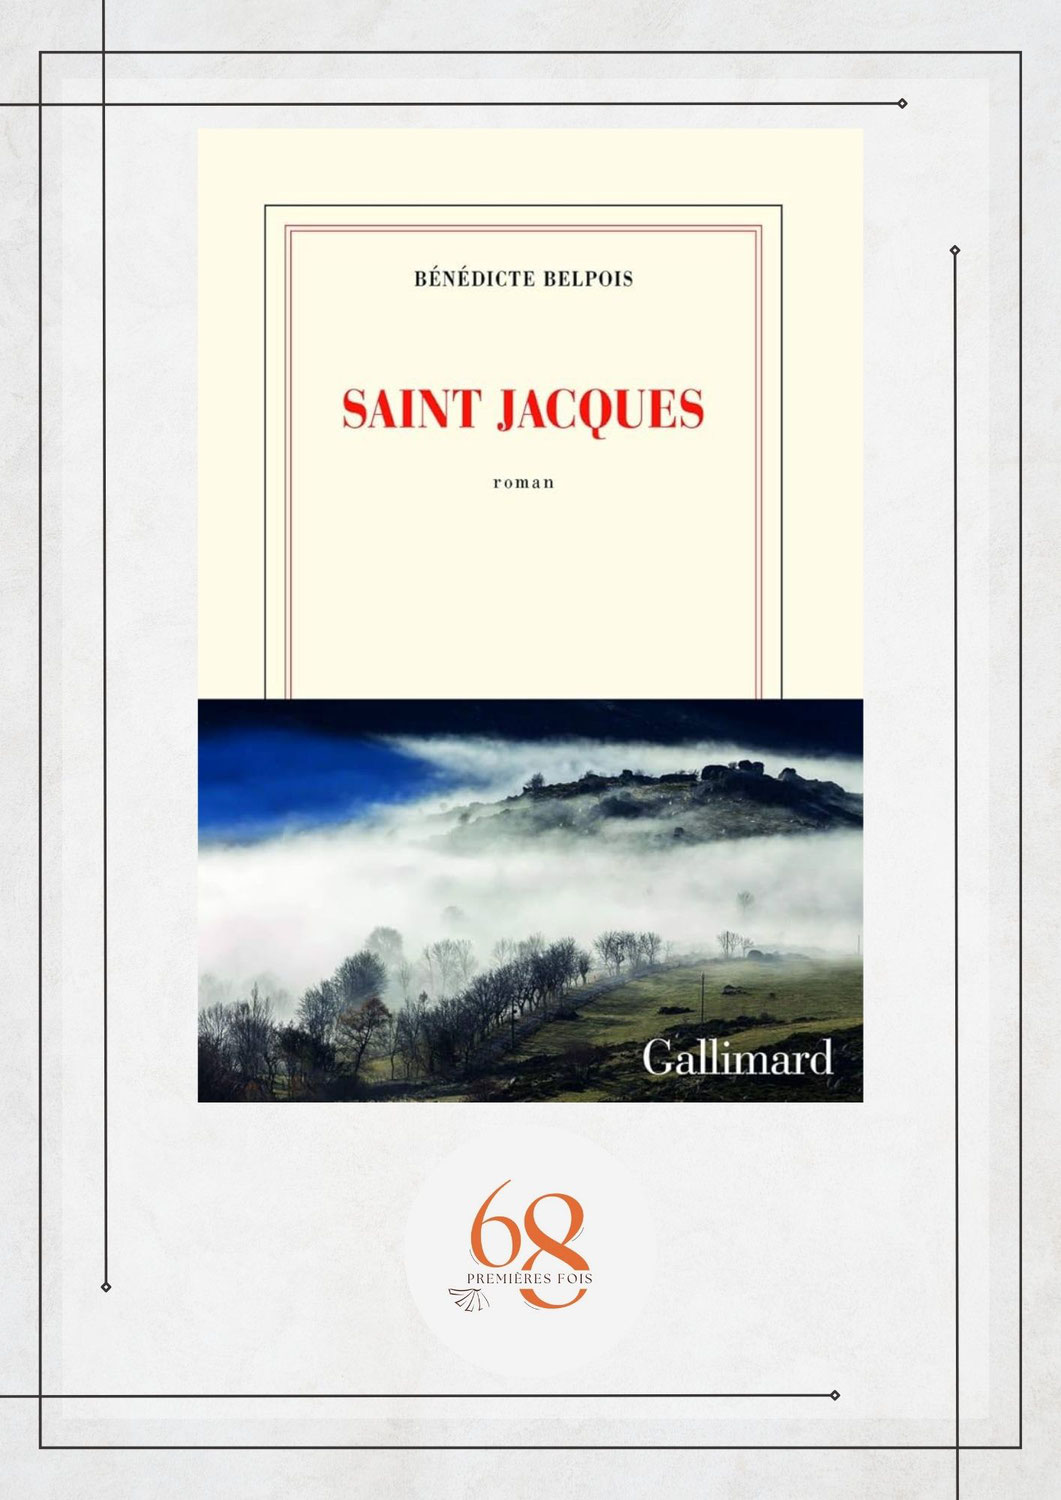 Saint Jacques, Bénédicte Belpois, Gallimard